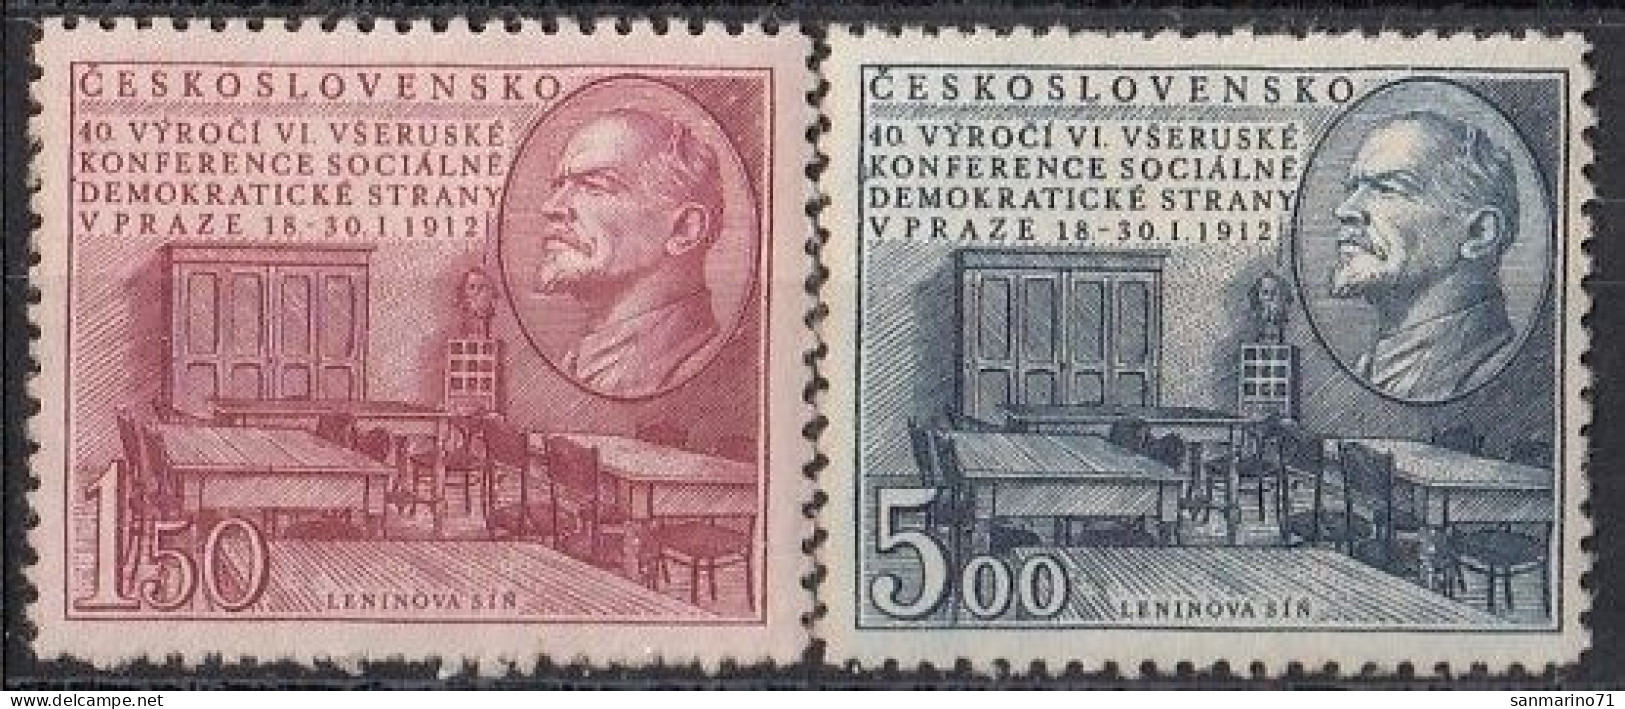 CZECHOSLOVAKIA 703-704,unused - Lenin